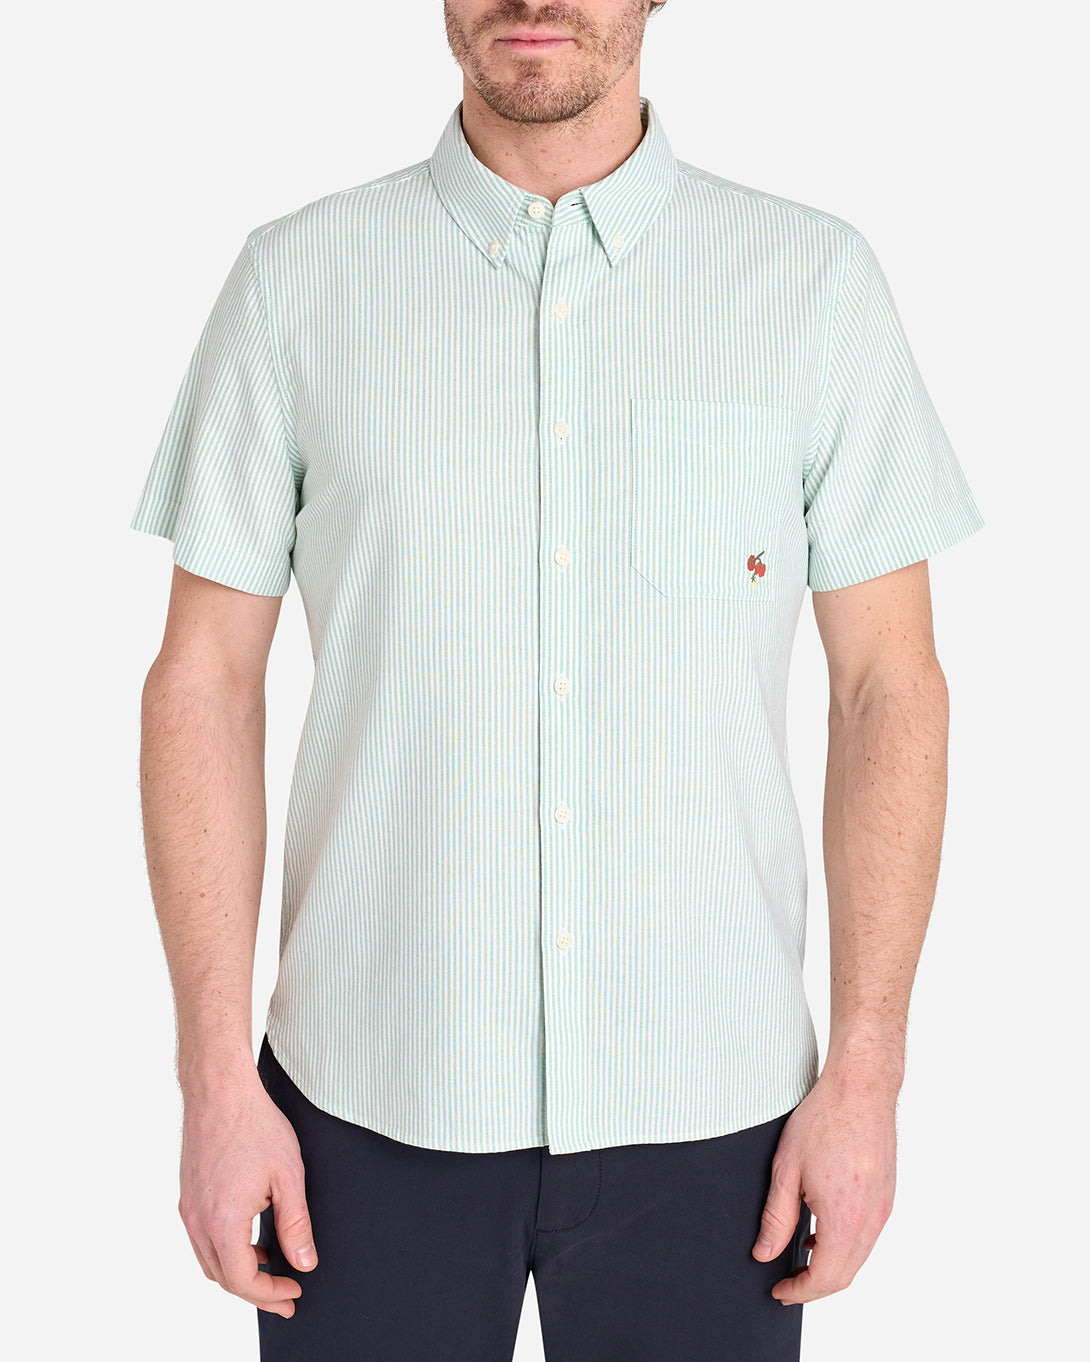 KASHMIR GREEN/WHITE STRIPE Fulton Stripe Oxford Shirt Mens Logo Short Sleeve Button Down